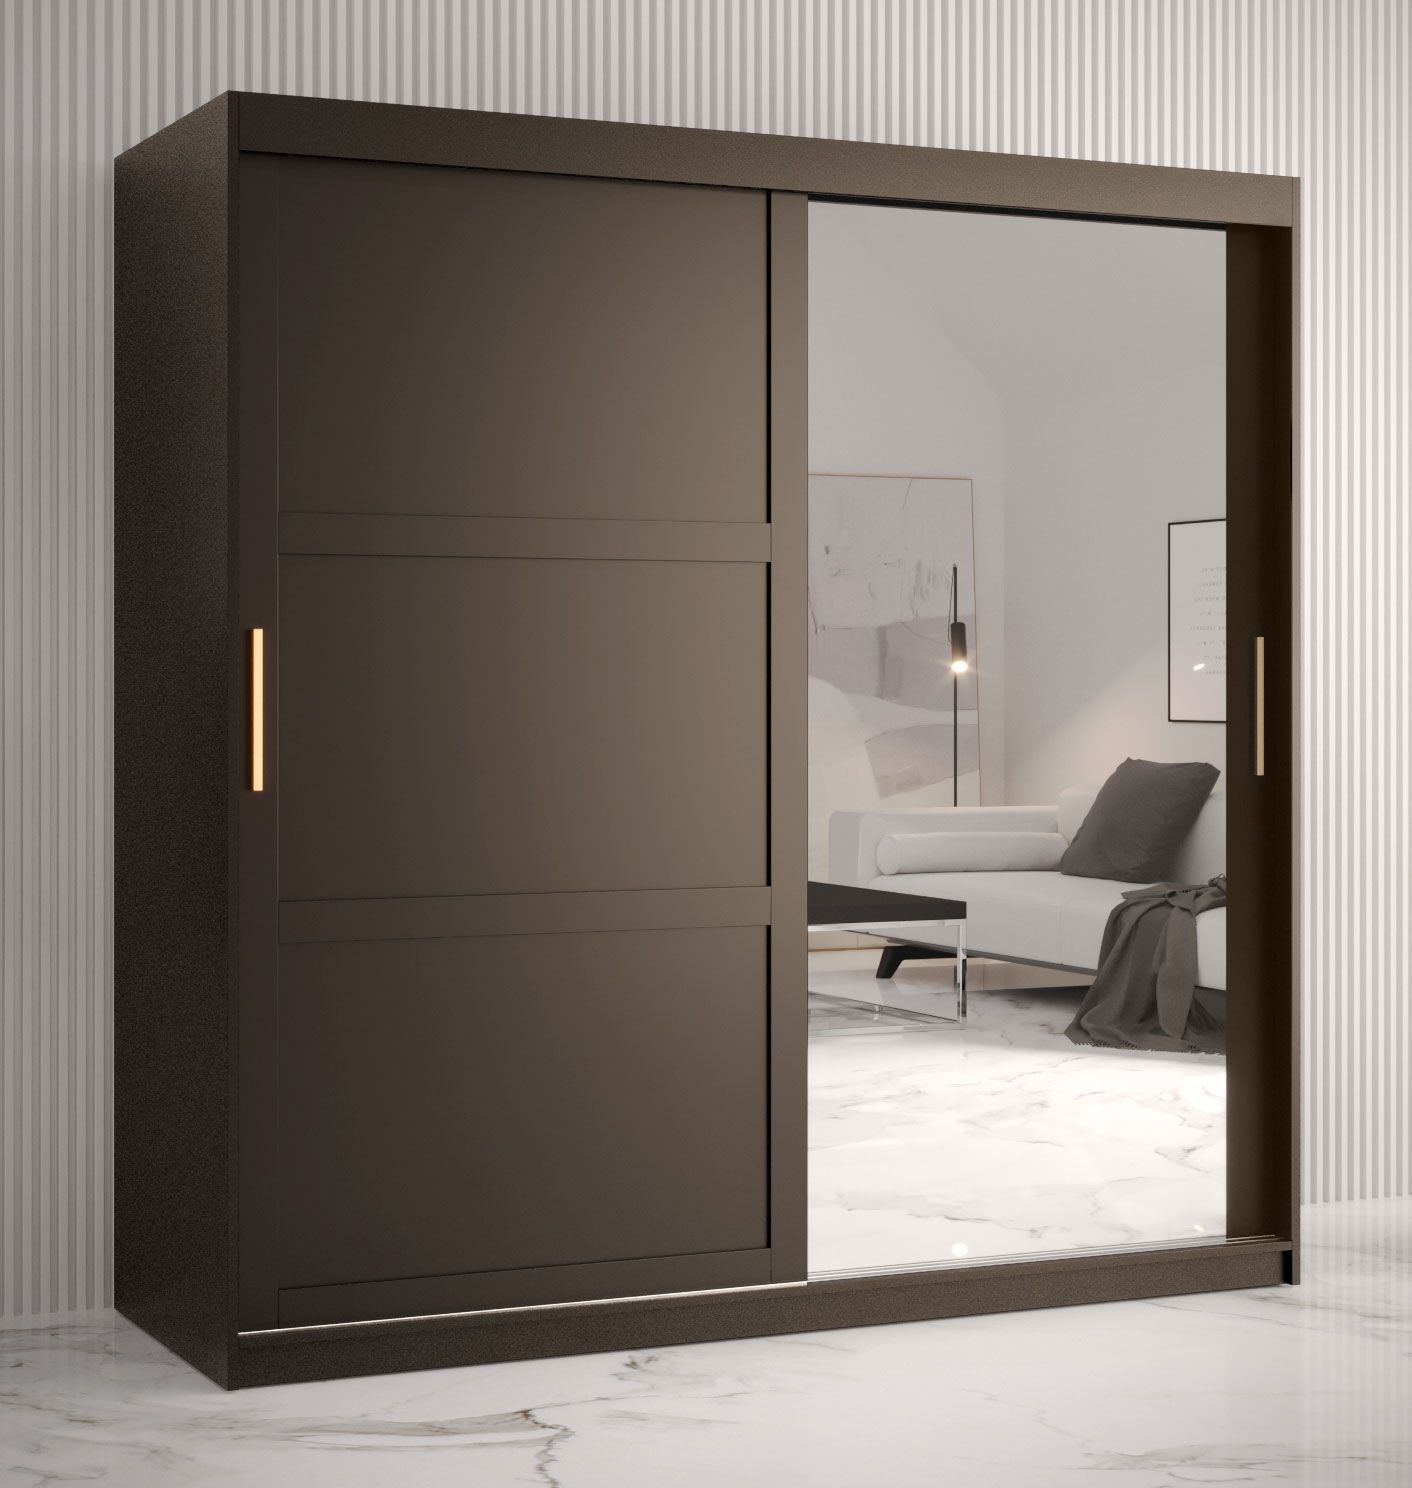 Kledingkast met één moderne deur met spiegel Liskamm 40, kleur: mat zwart - afmetingen: 200 x 180 x 62 cm (H x B x D), met 10 vakken en twee kledingstangen